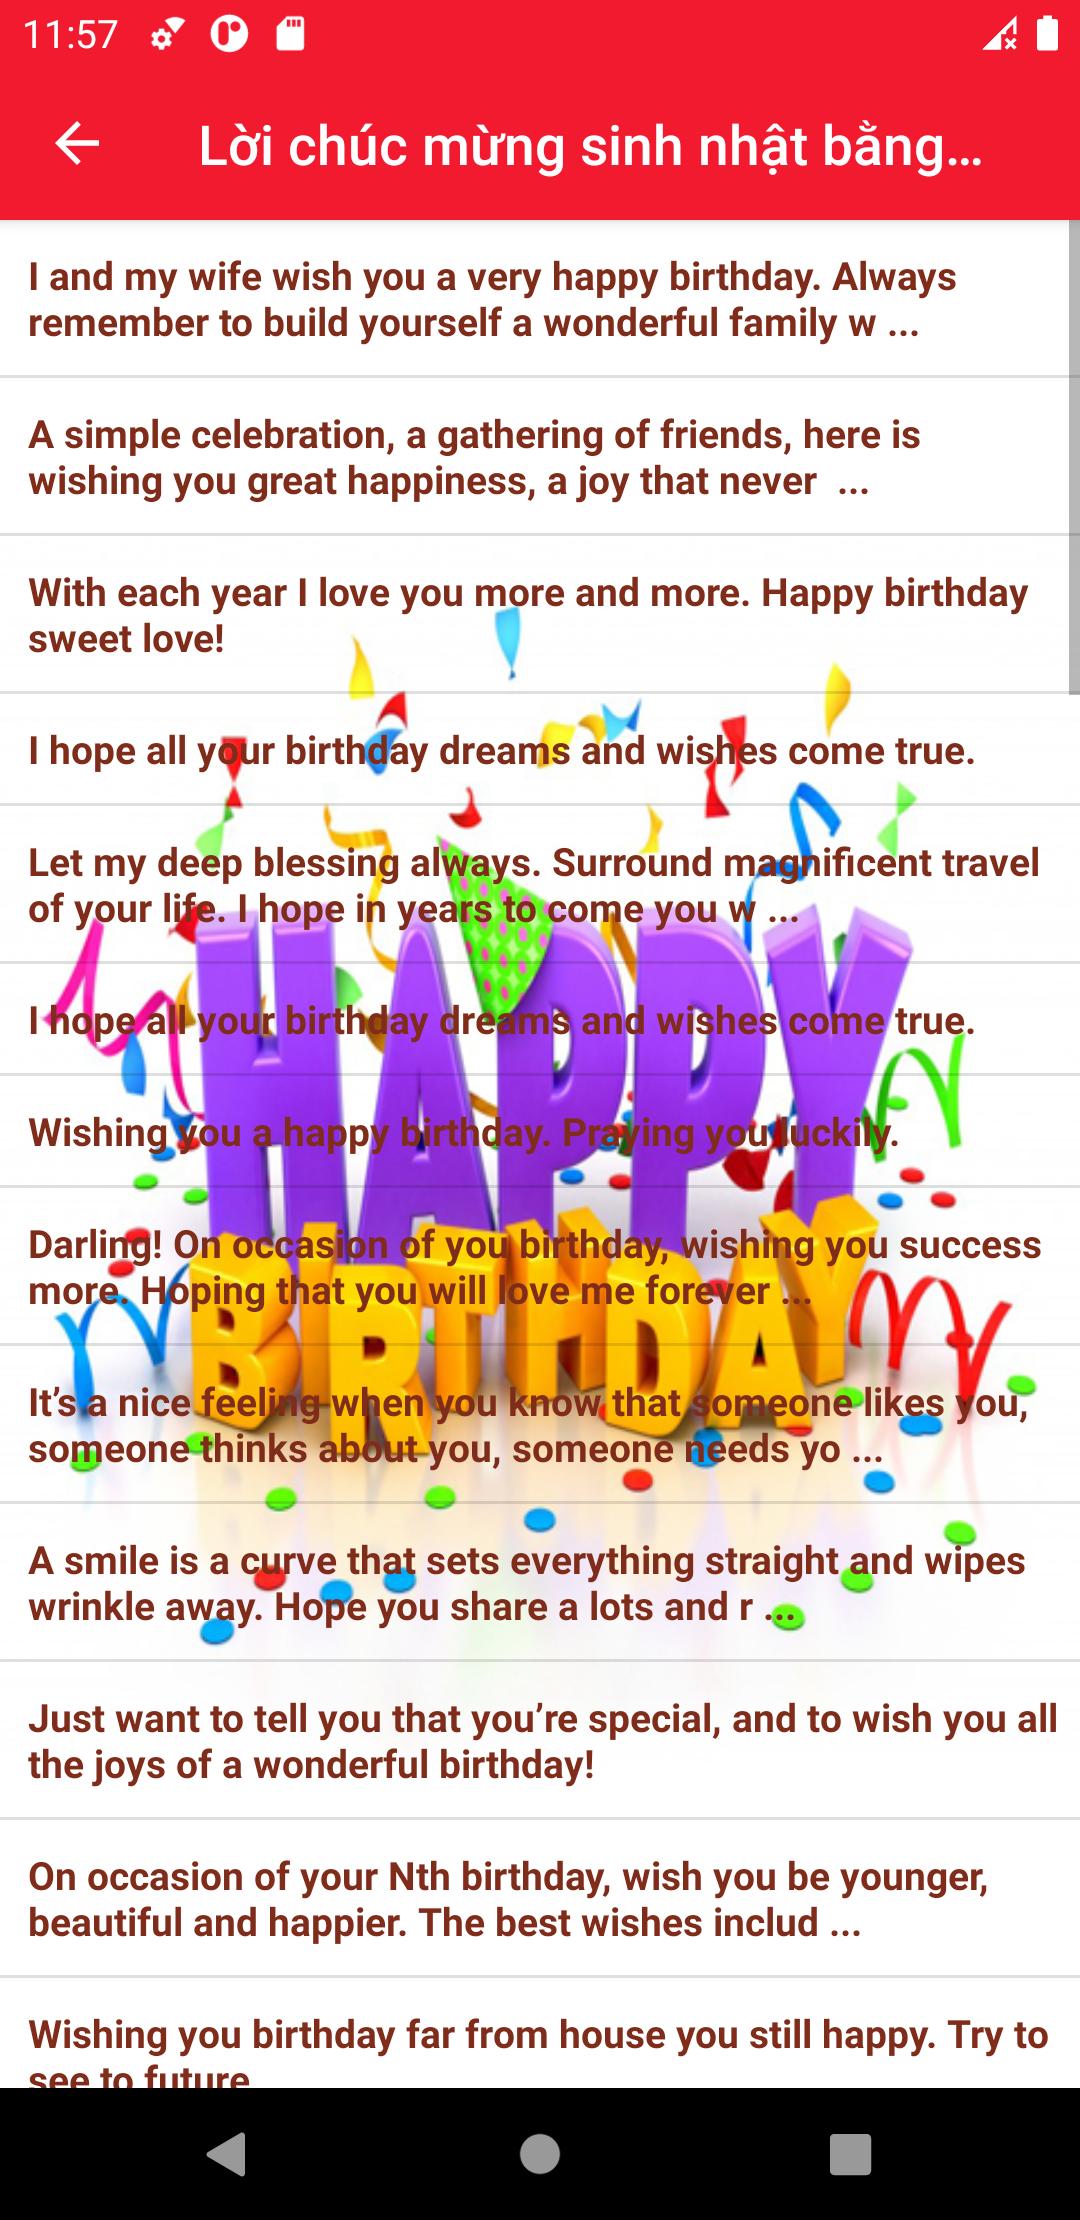 Lời chúc sinh nhật hay nhất - Birthday Wishes 10.22 Screenshot 8